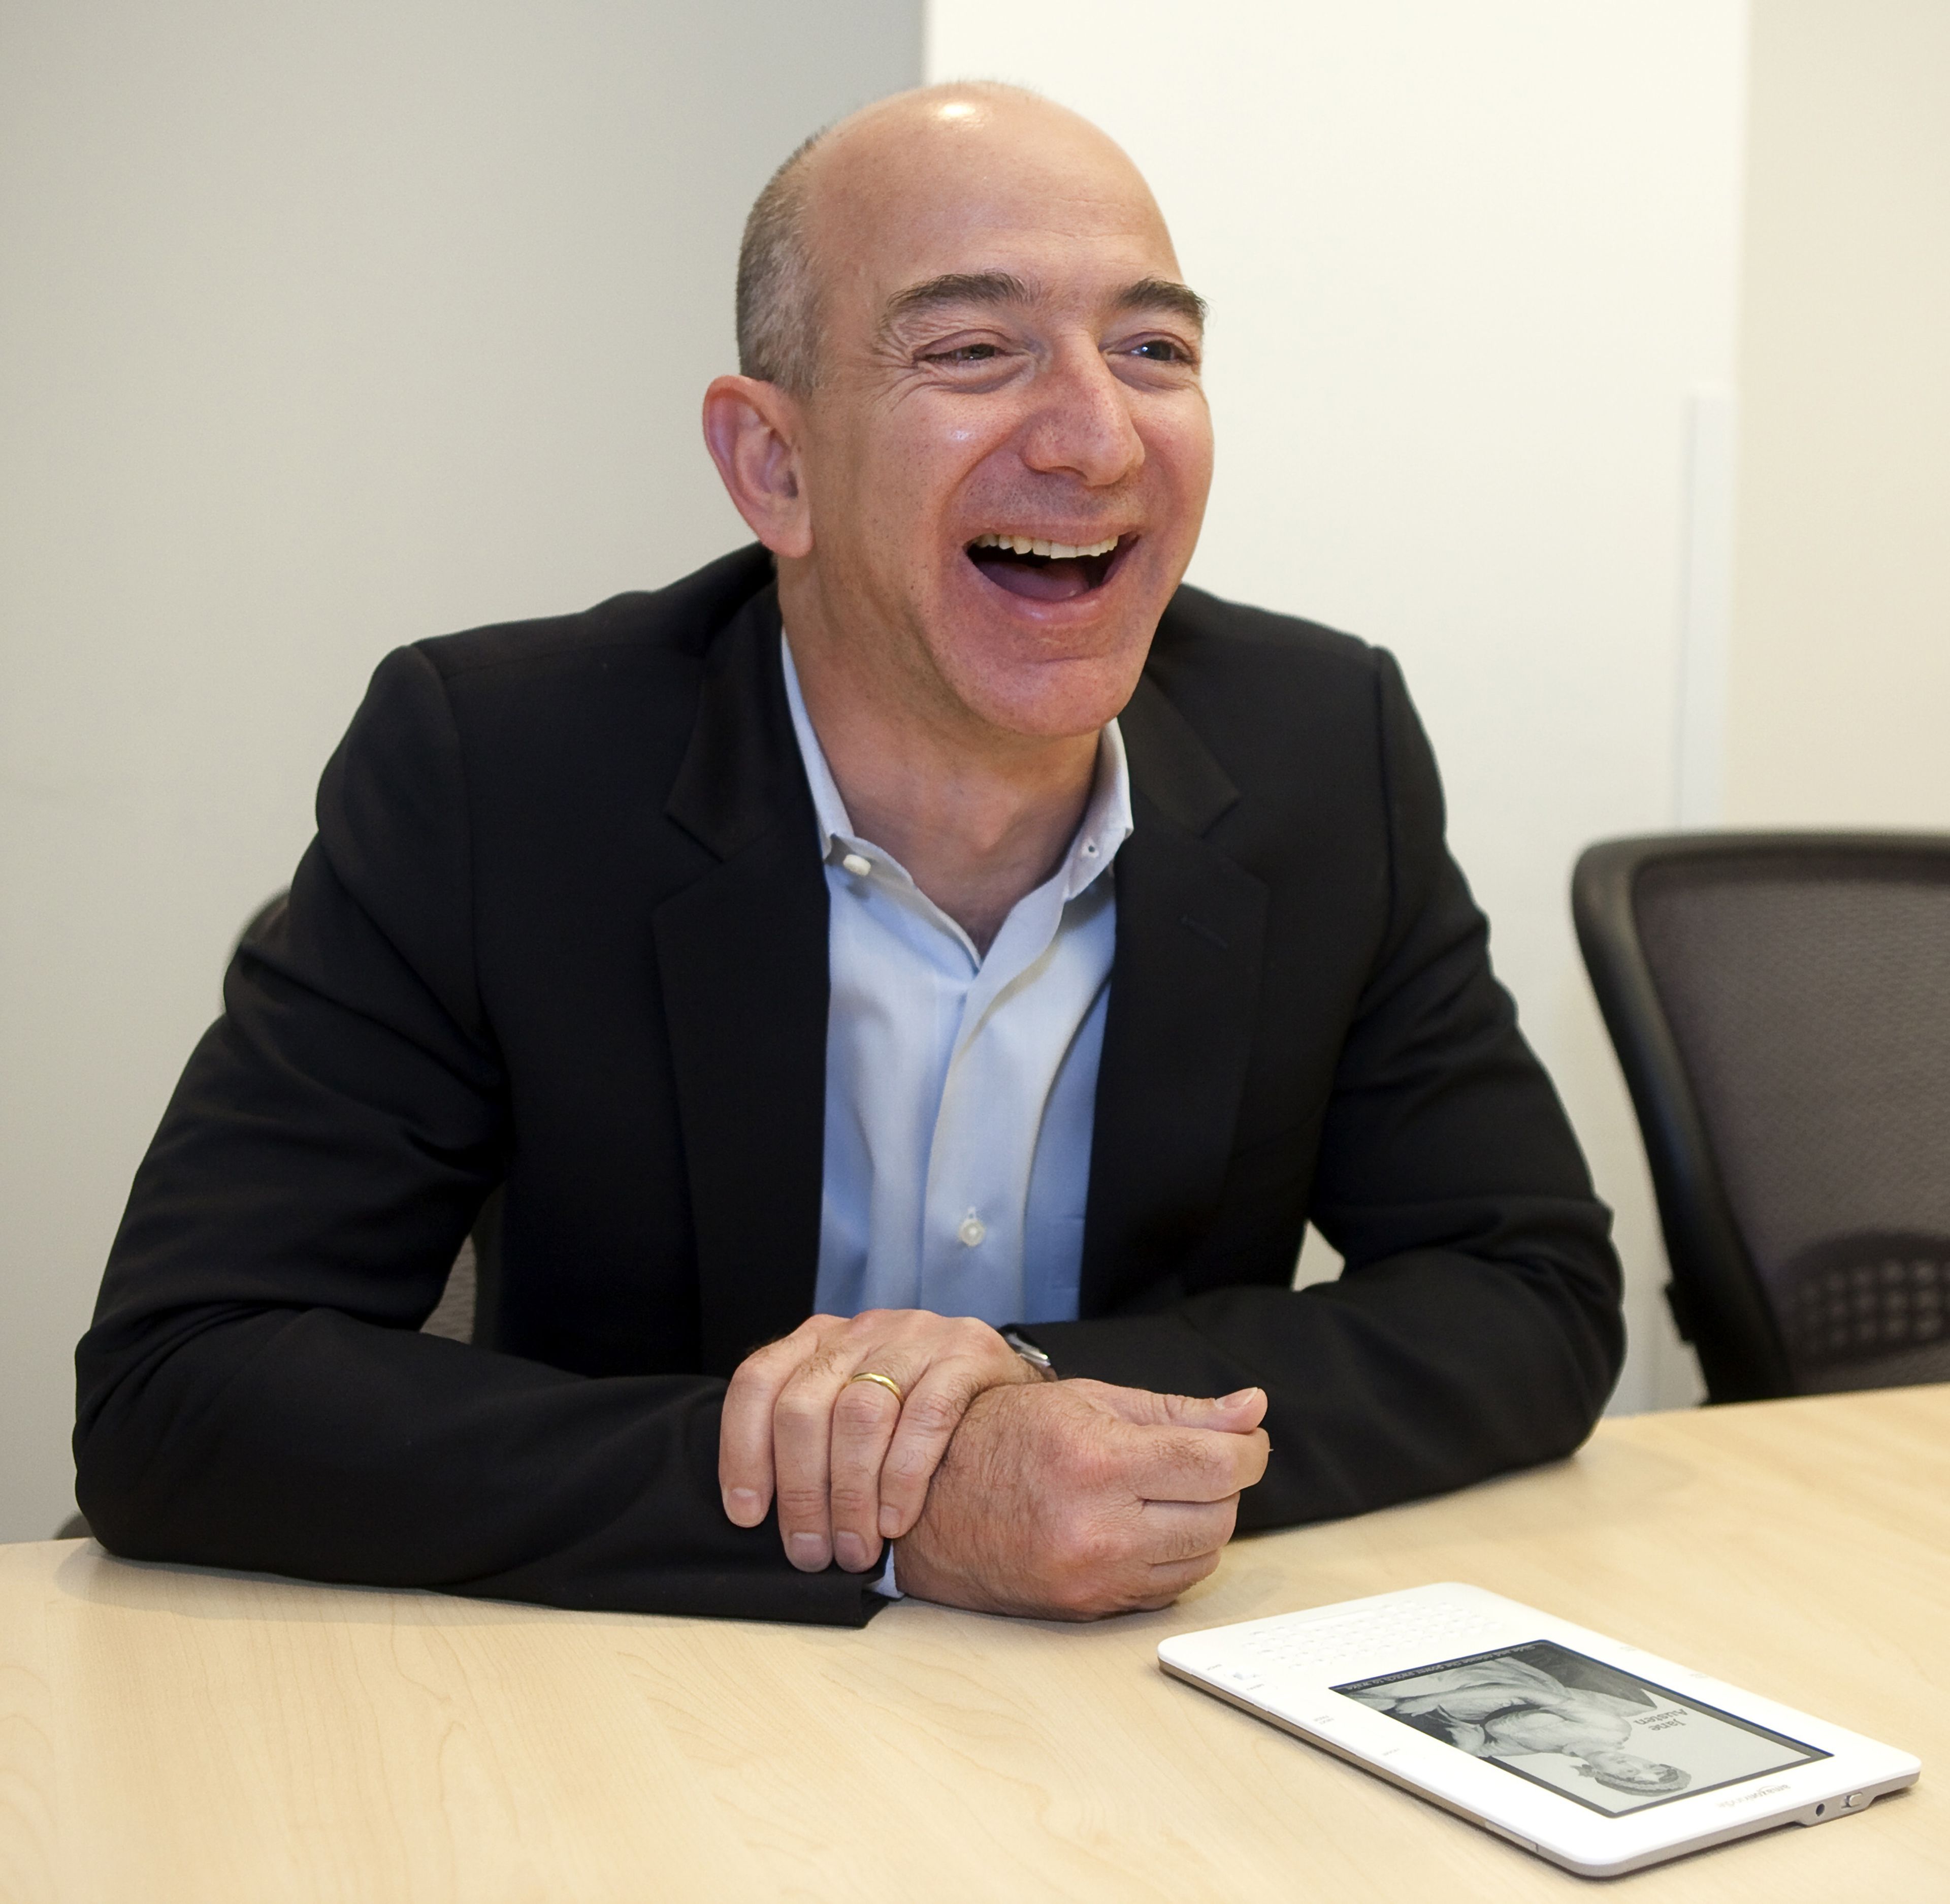 Jeff Bezos, fundador de Amazon, durante una entrevista en 2009.